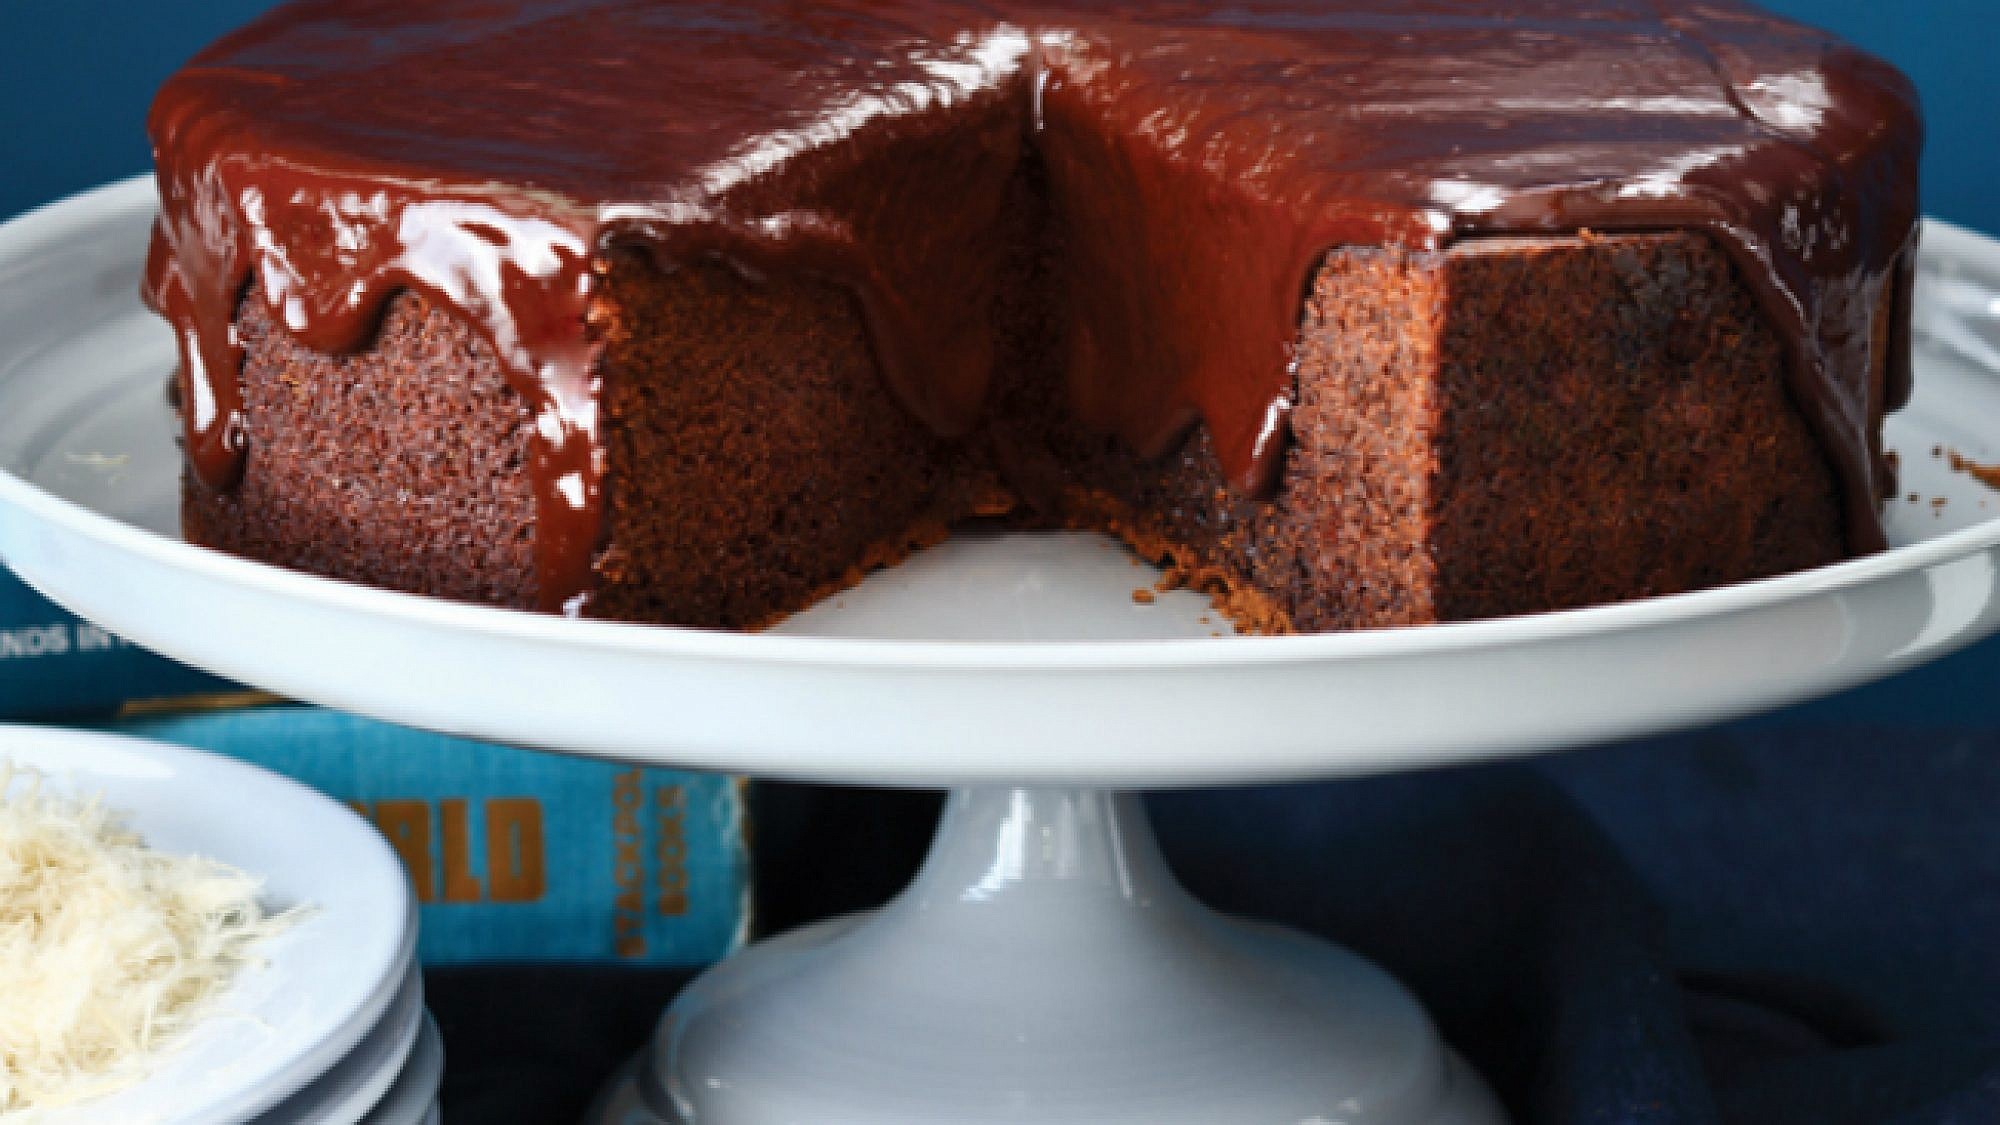 עוגת שוקולד ושערות חלבה Handyman. צילום: דן פרץ | סגנון: עמית פרבר